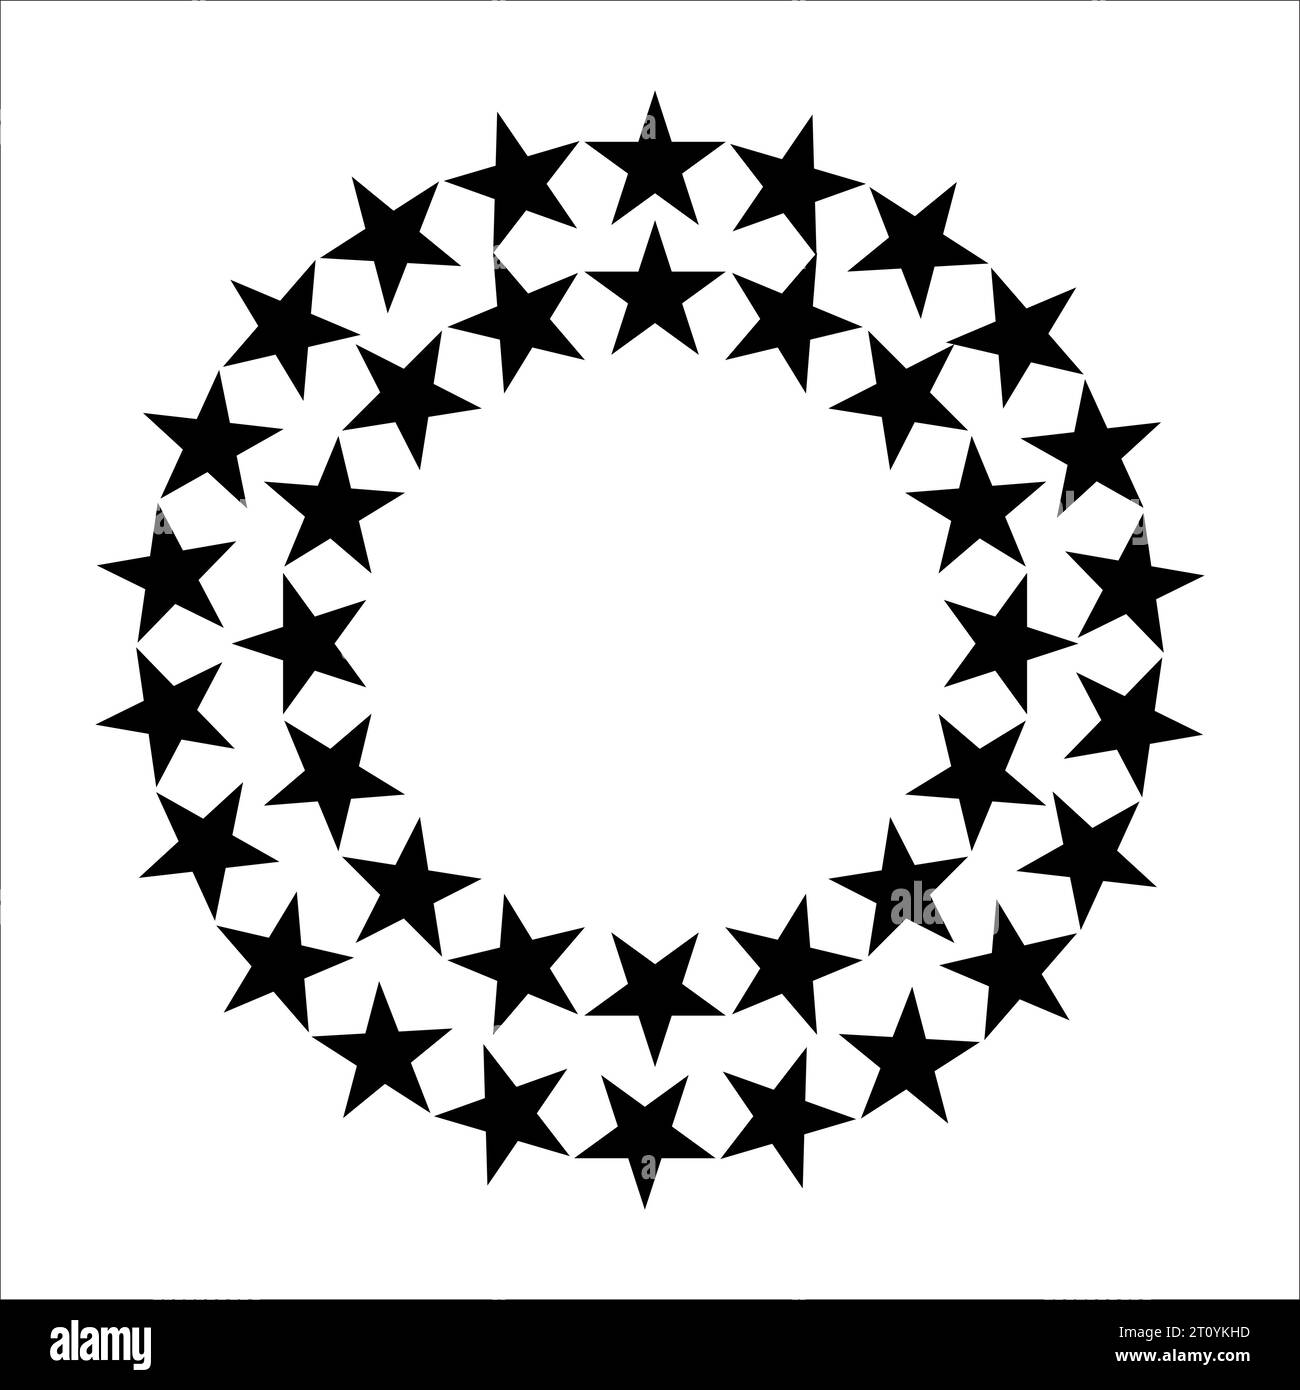 Sternkreis. Runde Rahmen mit Sternen für Abzeichen, Emblem und Dichtung. Kreisförmige Bewertungssymbole mit Fav, e fünfspitzer Silhouette Stern, Award Vektorzeichen Stock Vektor